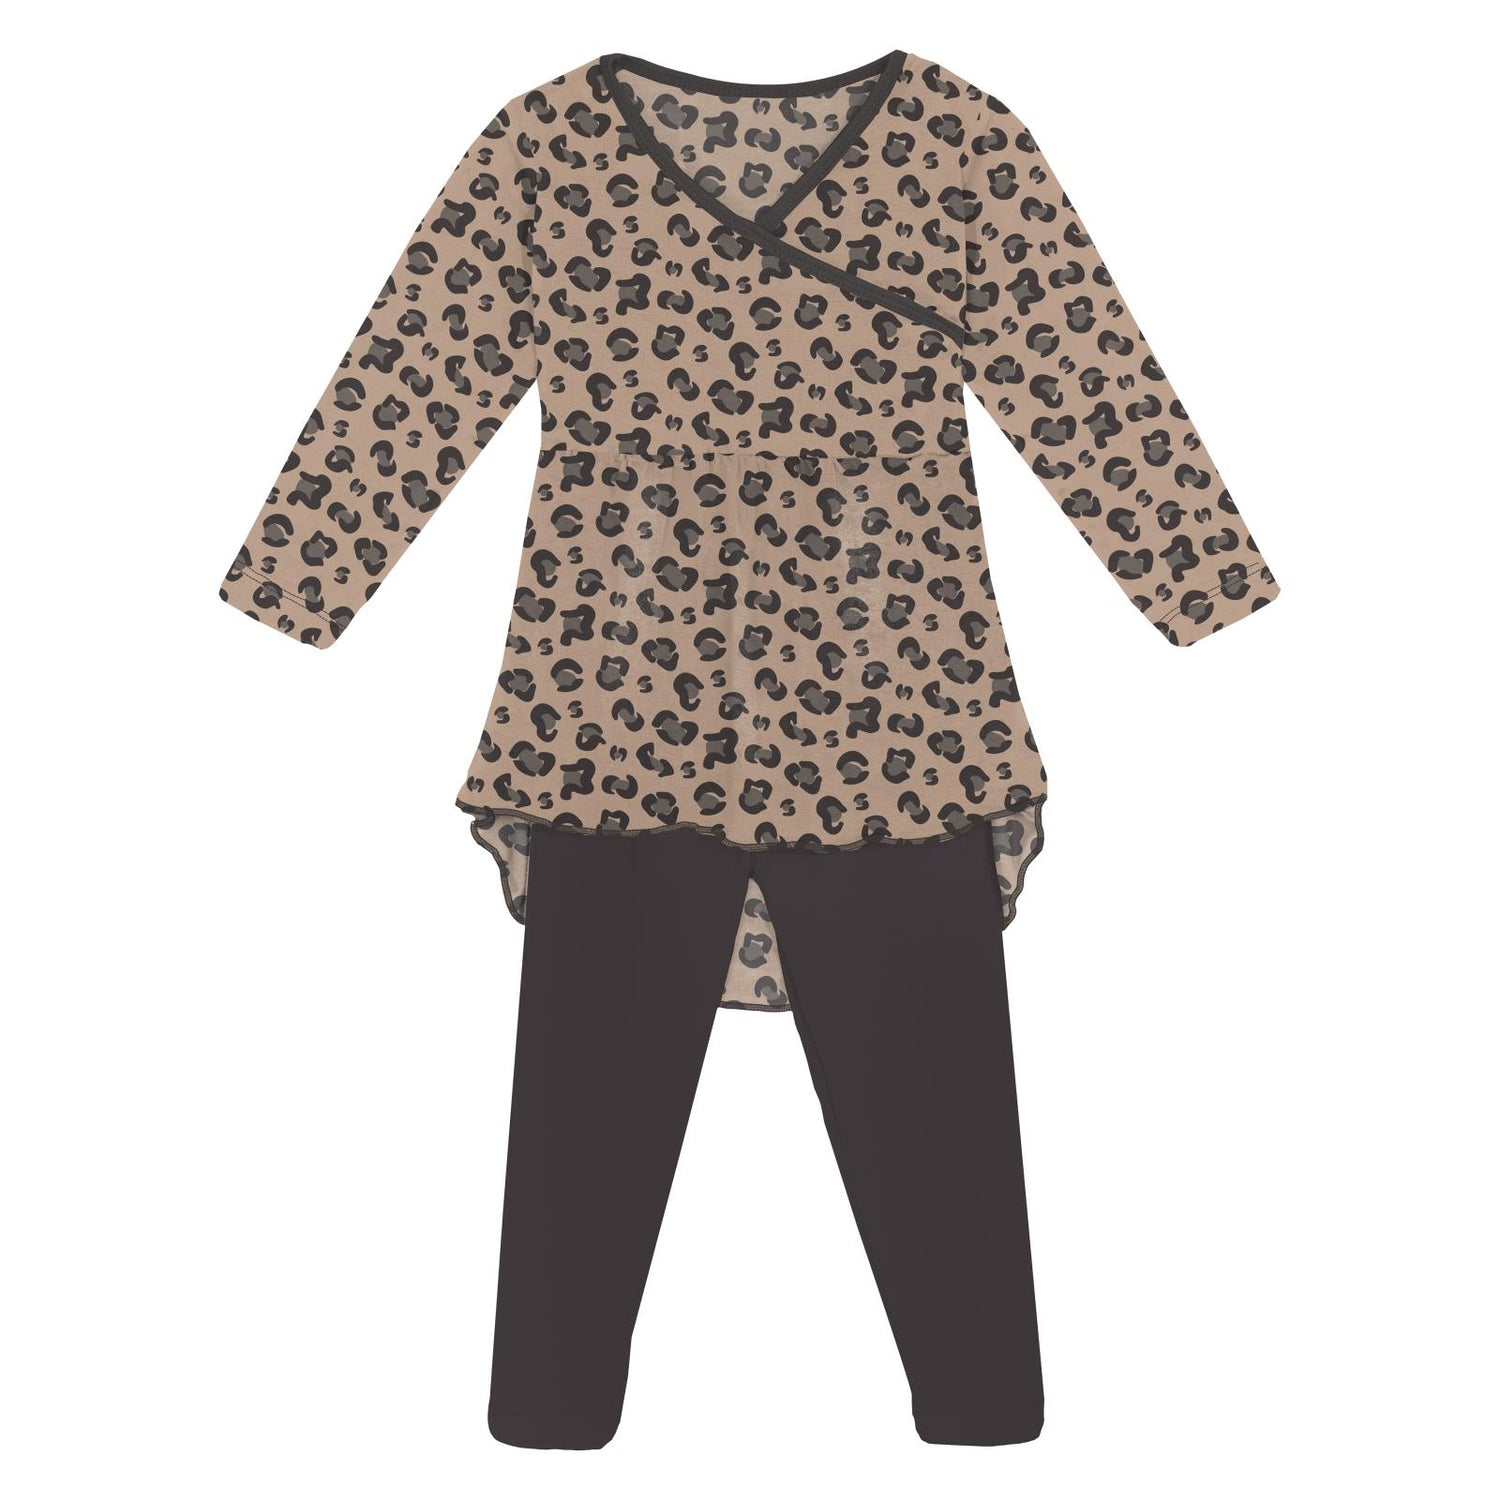 Print Long Sleeve Hi Lo Tee & Leggings Outfit Set in Suede Cheetah Print